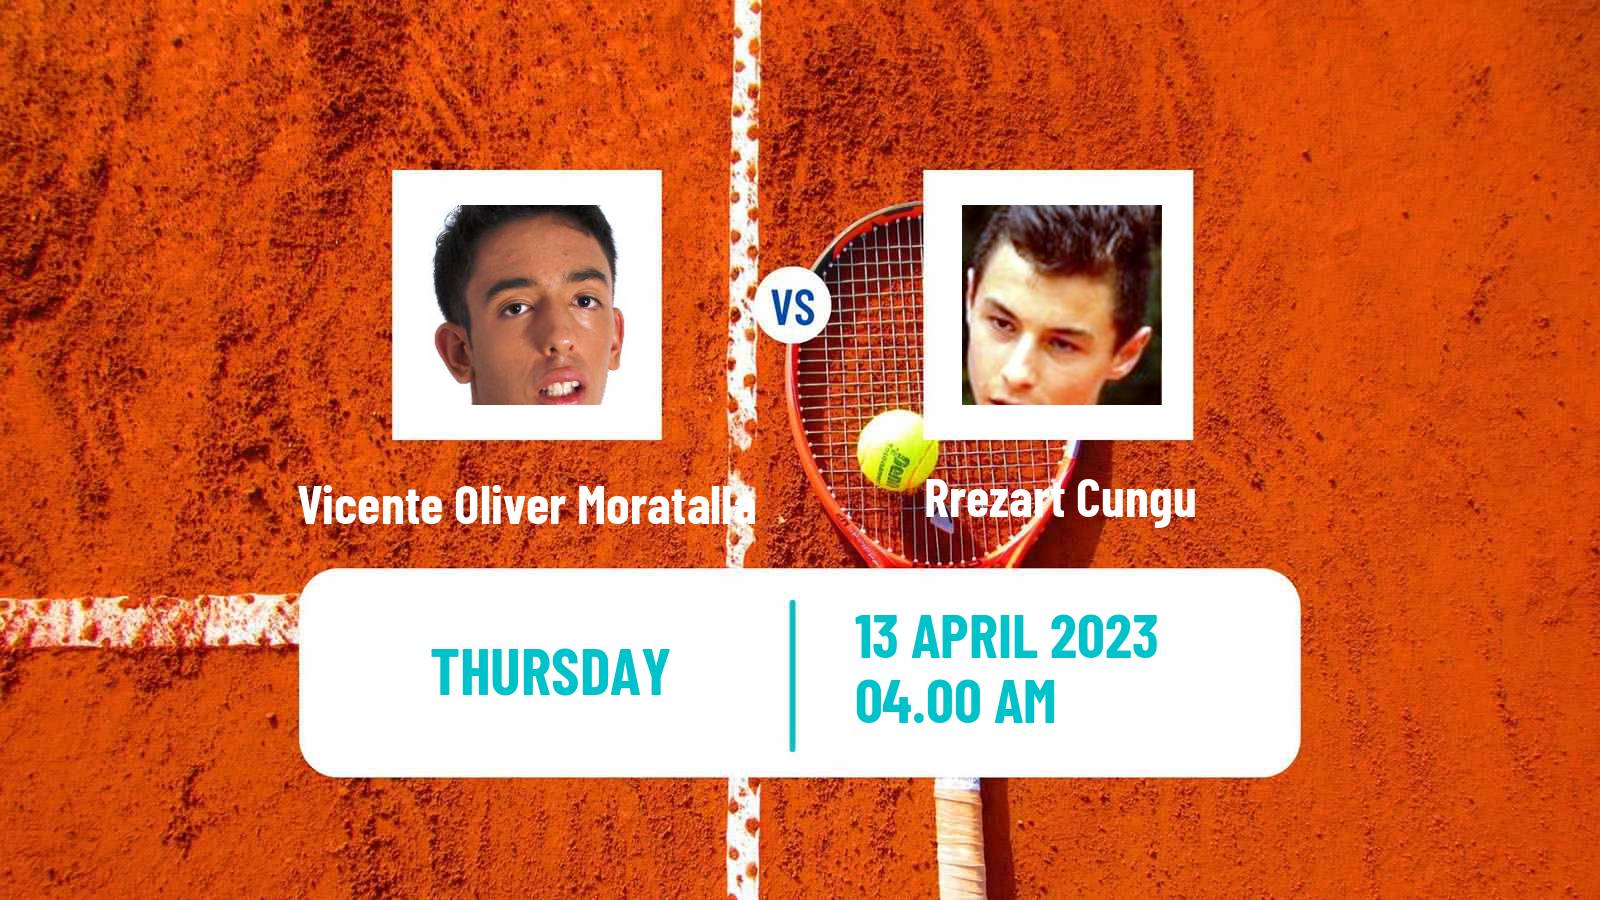 Tennis ITF Tournaments Vicente Oliver Moratalla - Rrezart Cungu